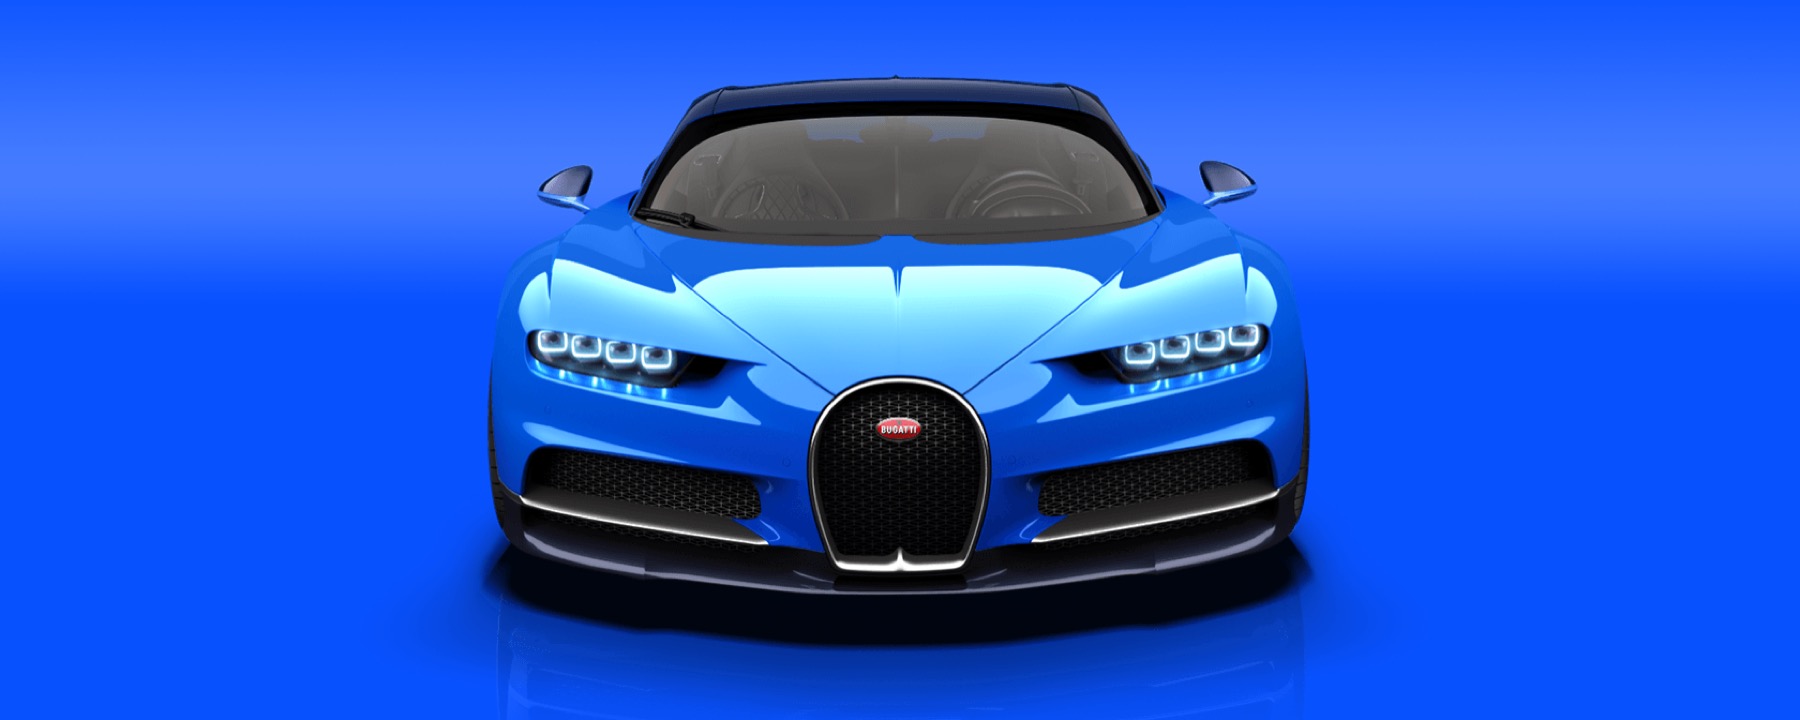 Điểm qua chiếc siêu xe hơi Chiron đầy uy lực với thiết kế đặc trưng của Bugatti. Là trái tim của mỗi tín đồ tốc độ, Chiron phá vỡ giới hạn với tốc độ kỷ lục và động cơ khủng. Hãy xem hình ảnh liên quan để thử cảm giác tuyệt vời của một chuyến phiêu lưu trên đường đua.